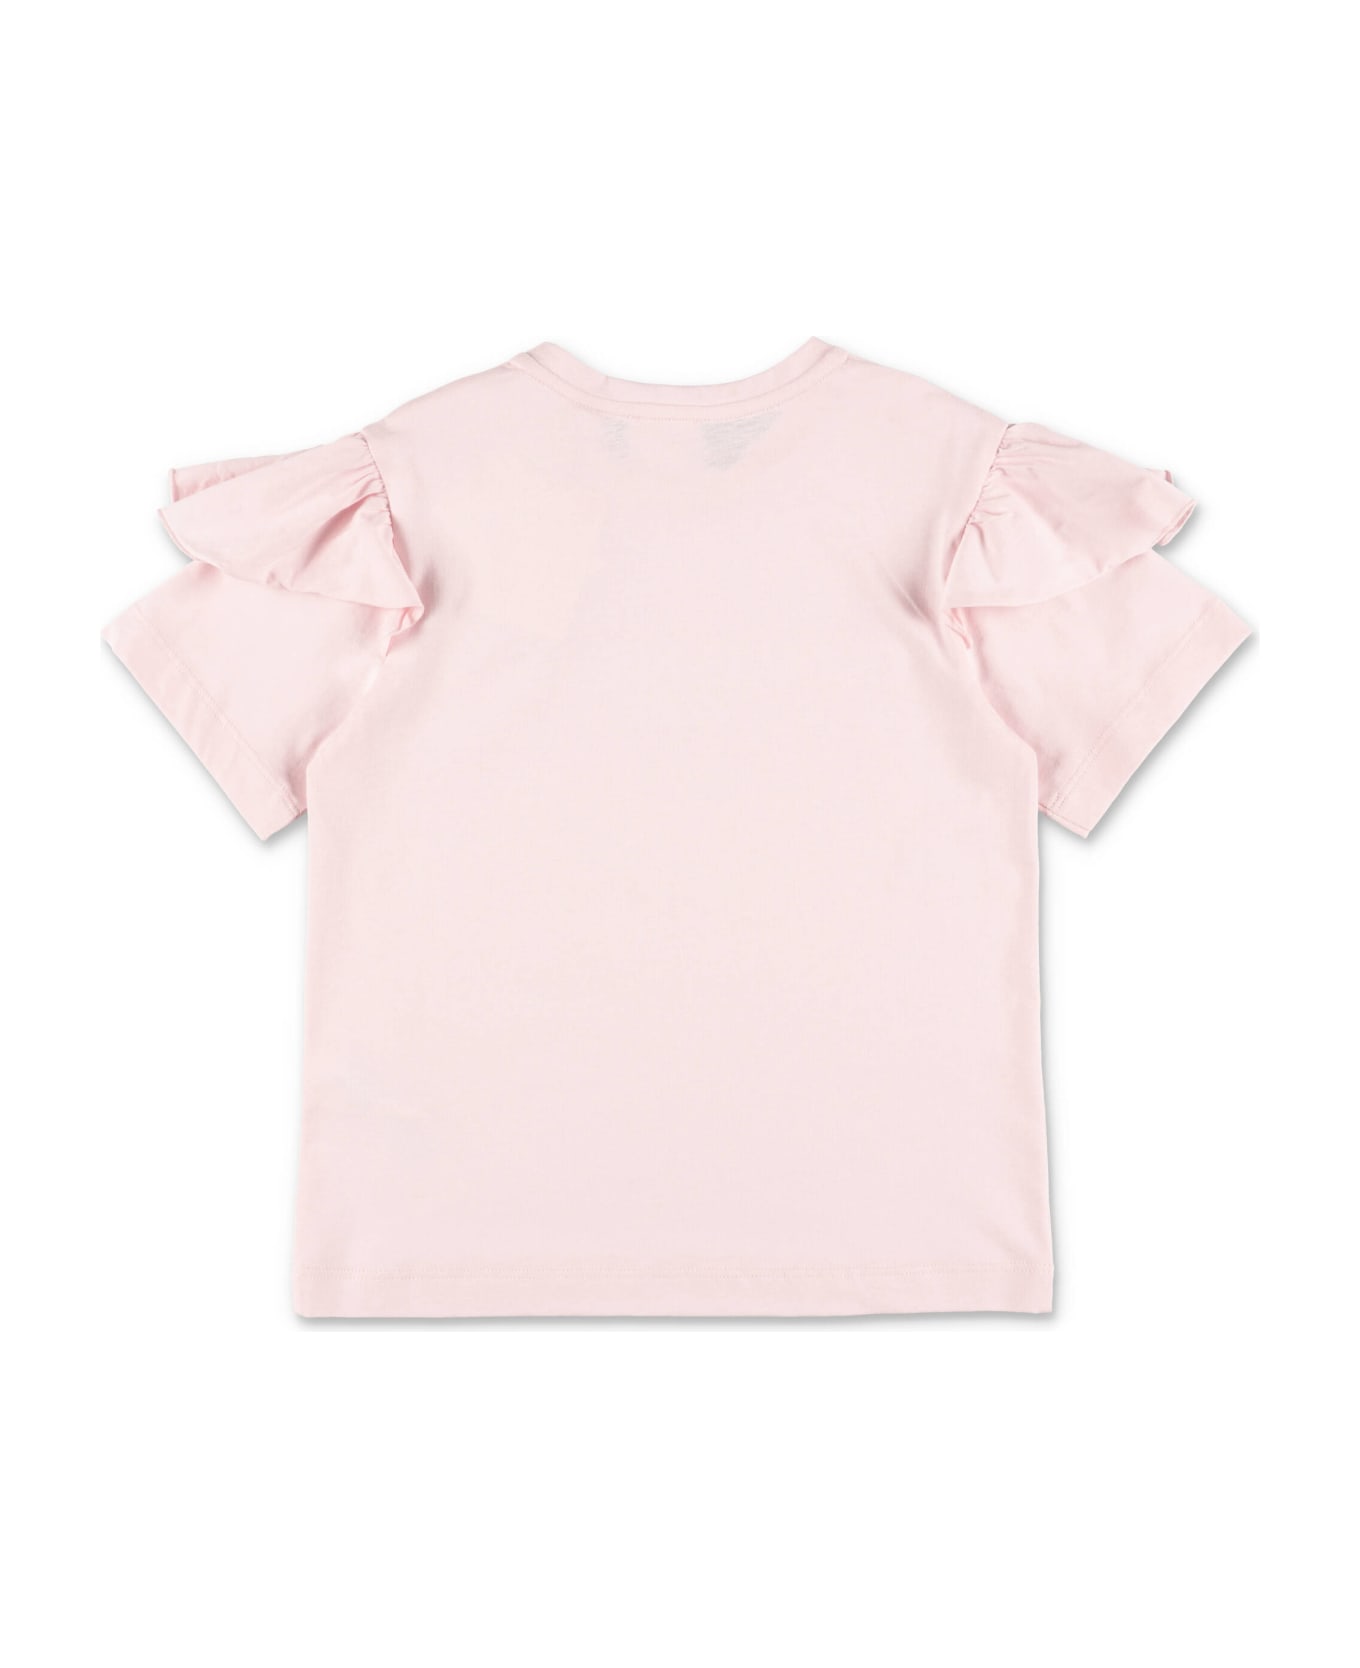 Givenchy T-shirt Rosa In Jersey Di Cotone Bambina - Rosa